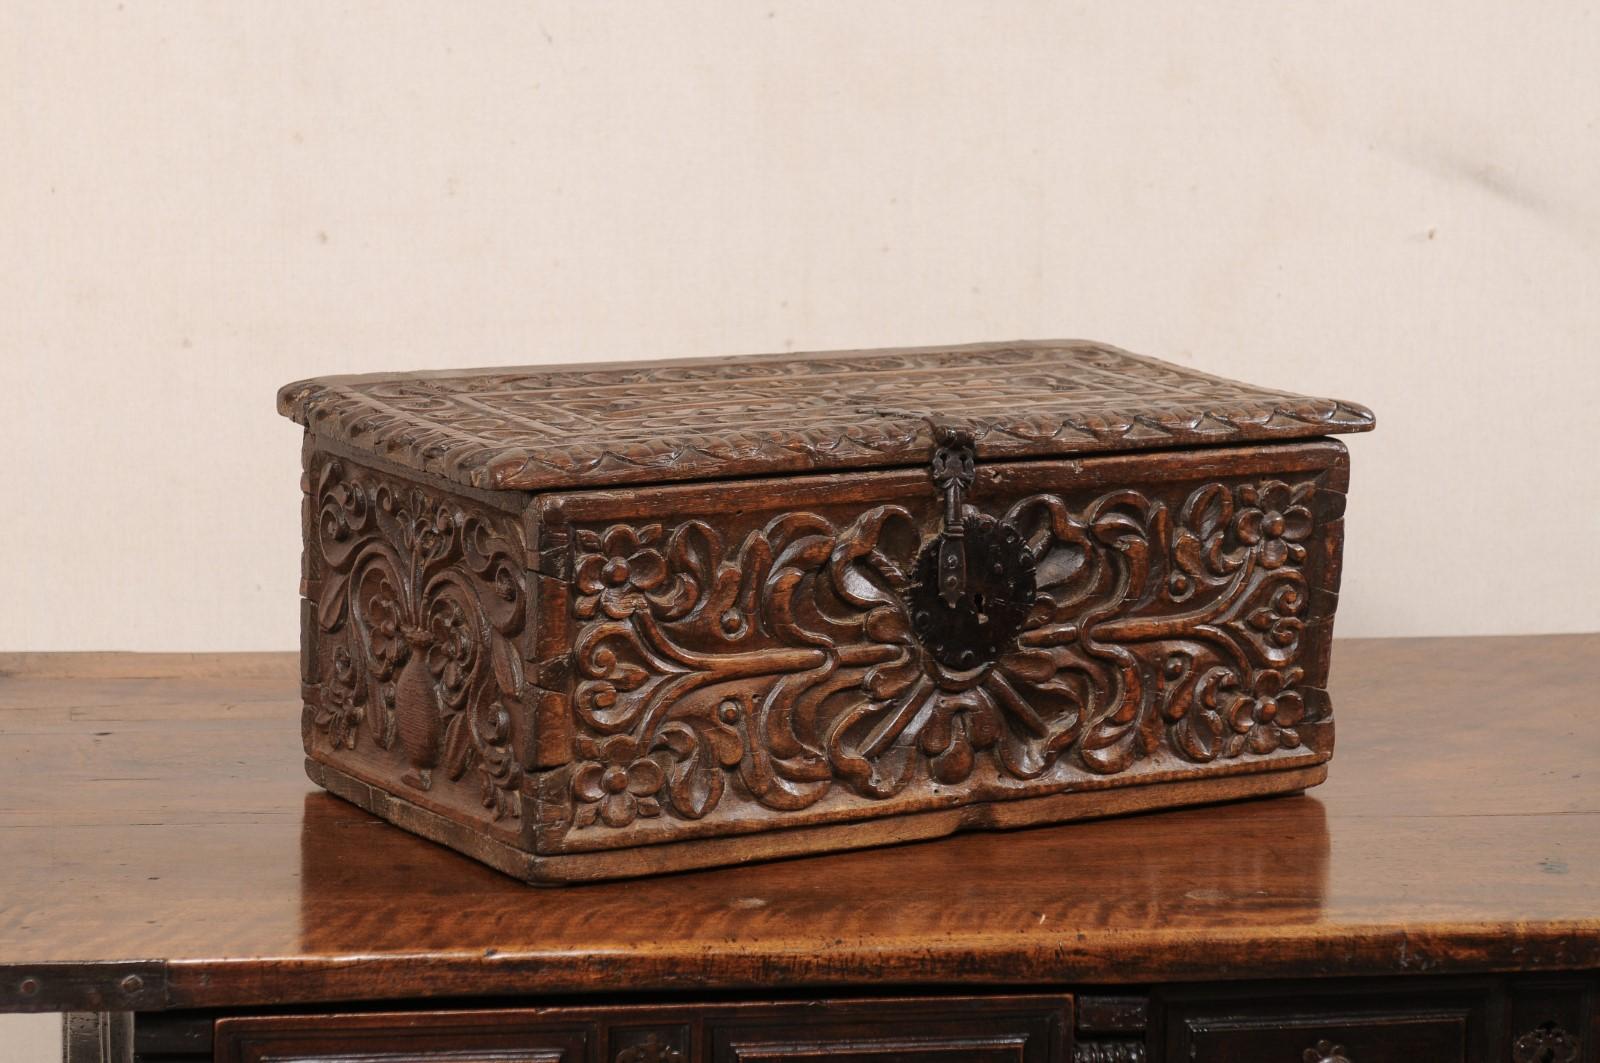 Boîte de rangement en bois sculpté de l'époque coloniale espagnole, datant du XVIIIe siècle. Ce coffre ancien d'époque Coloni a une forme rectangulaire avec un dessus plat, qui a été orné de lourdes sculptures à la main en forme de feuillage sur le